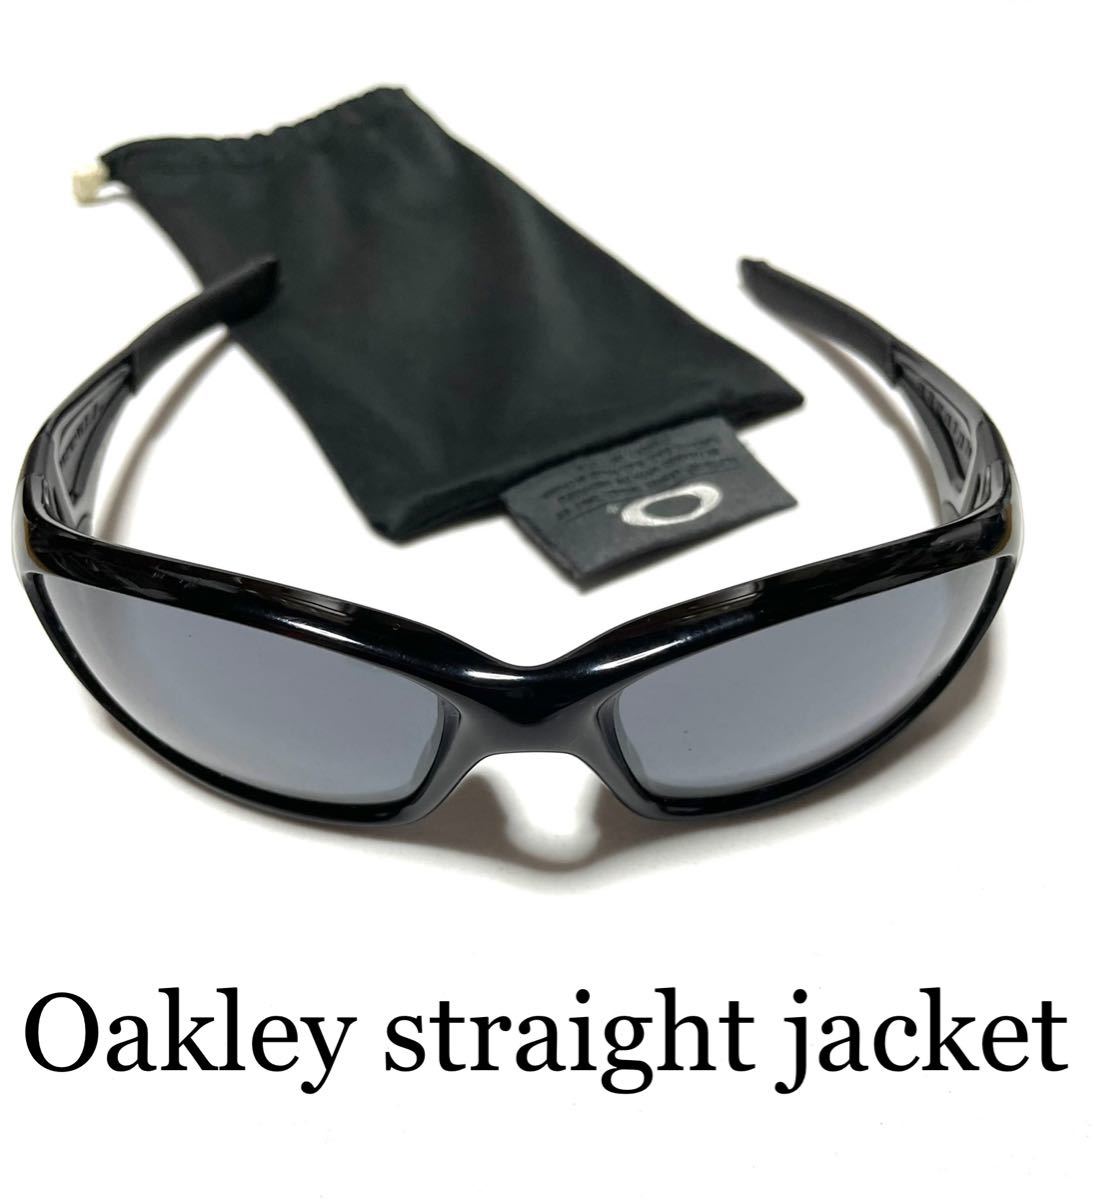 OAKLEY STRAIGHTJACKET ストレートジャケット